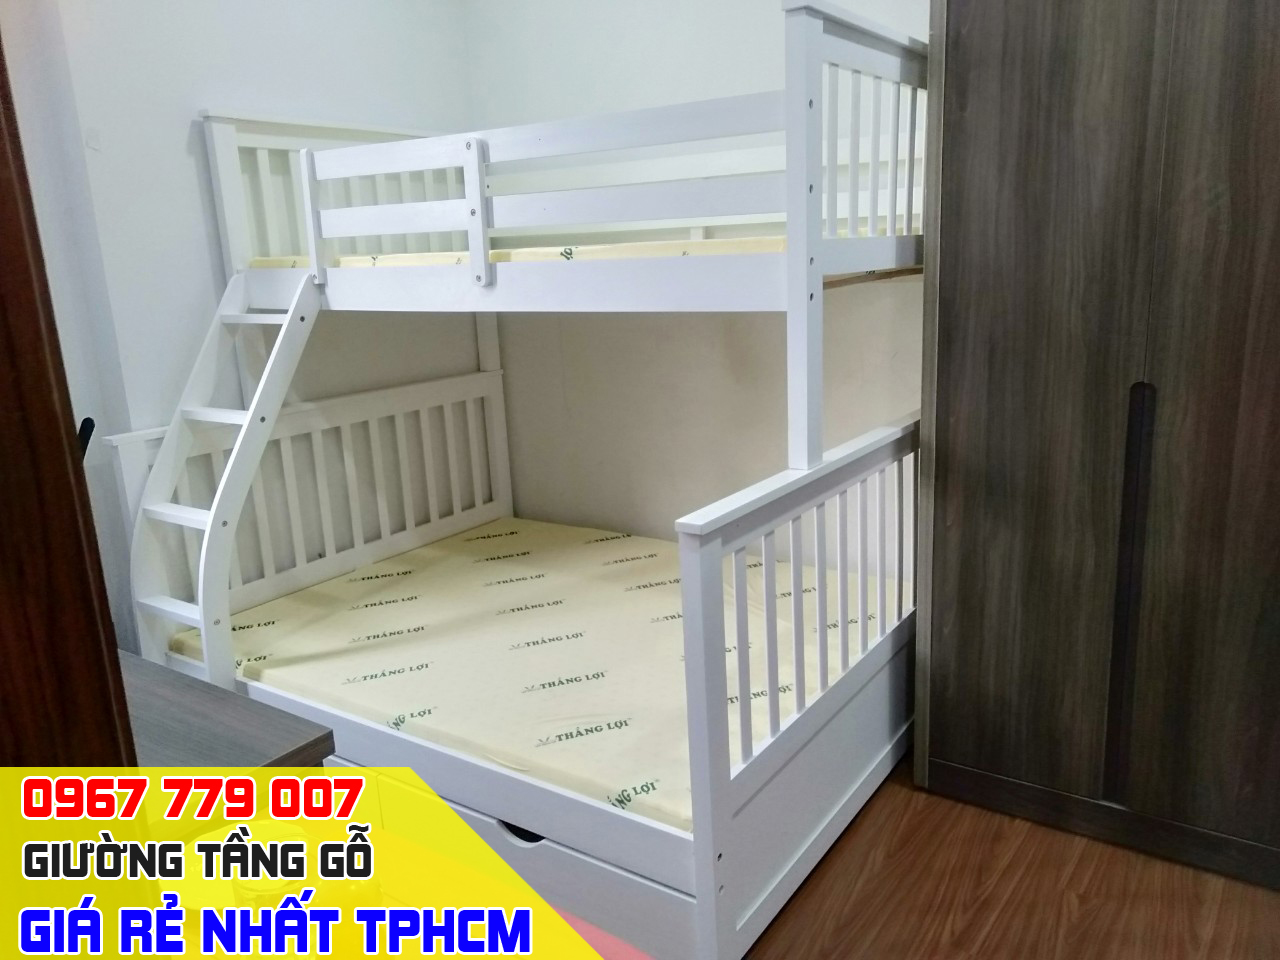 CH bán giường tầng trẻ em giá rẻ uy tín nhất Quận Gò Vấp TPHCM 13